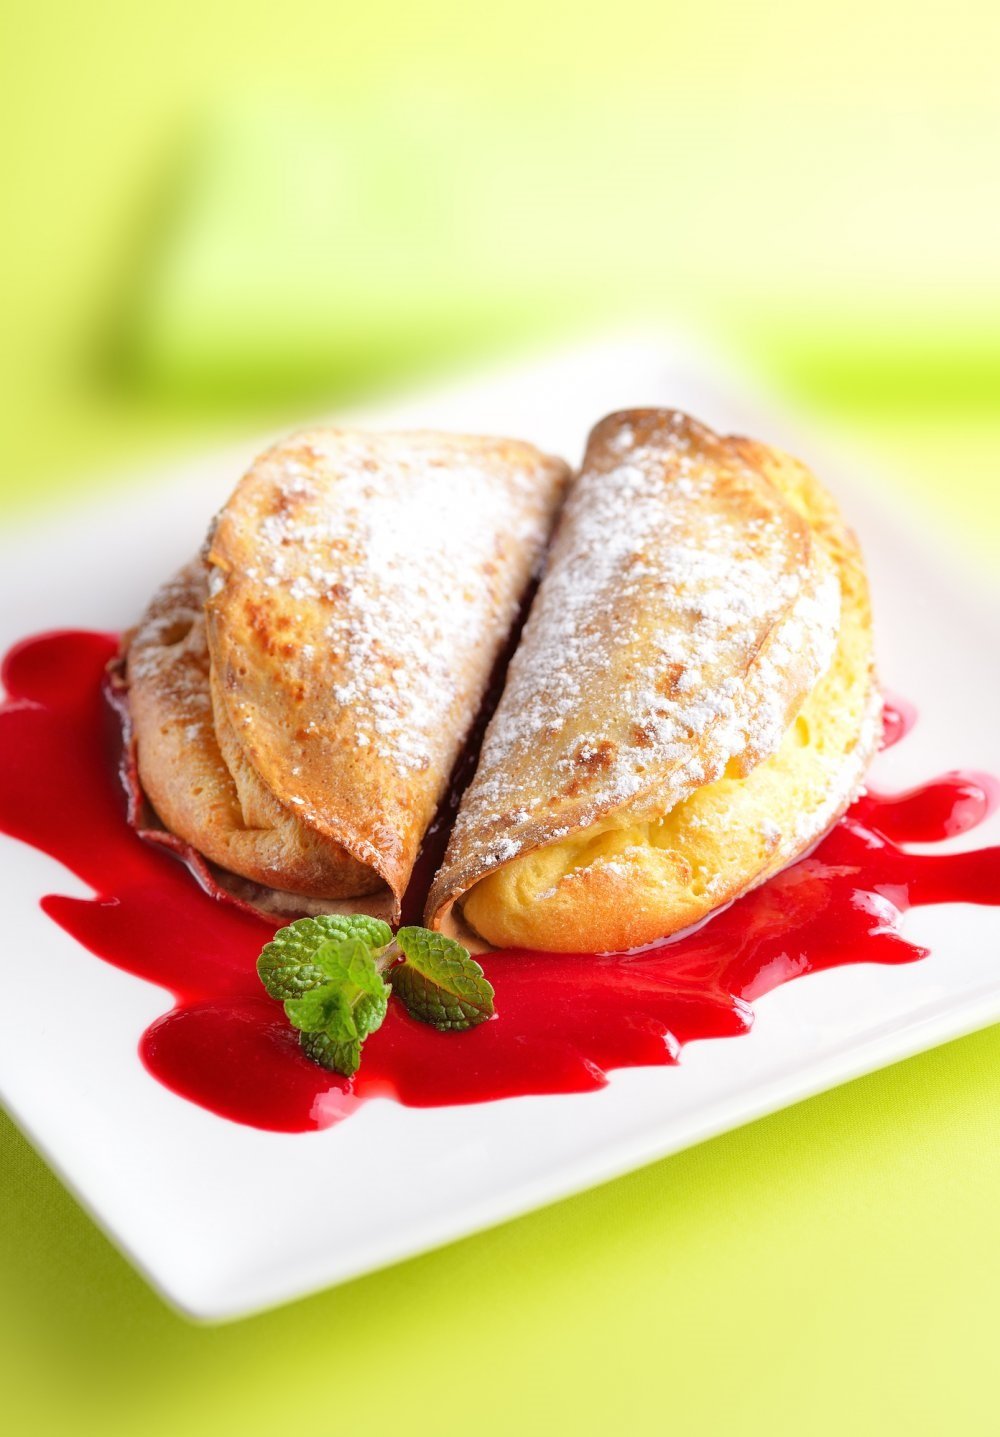 https://www.laboutiquedeschefs.com/upload/images/crepes-soufflees-et-coulis-de-fraises.jpg